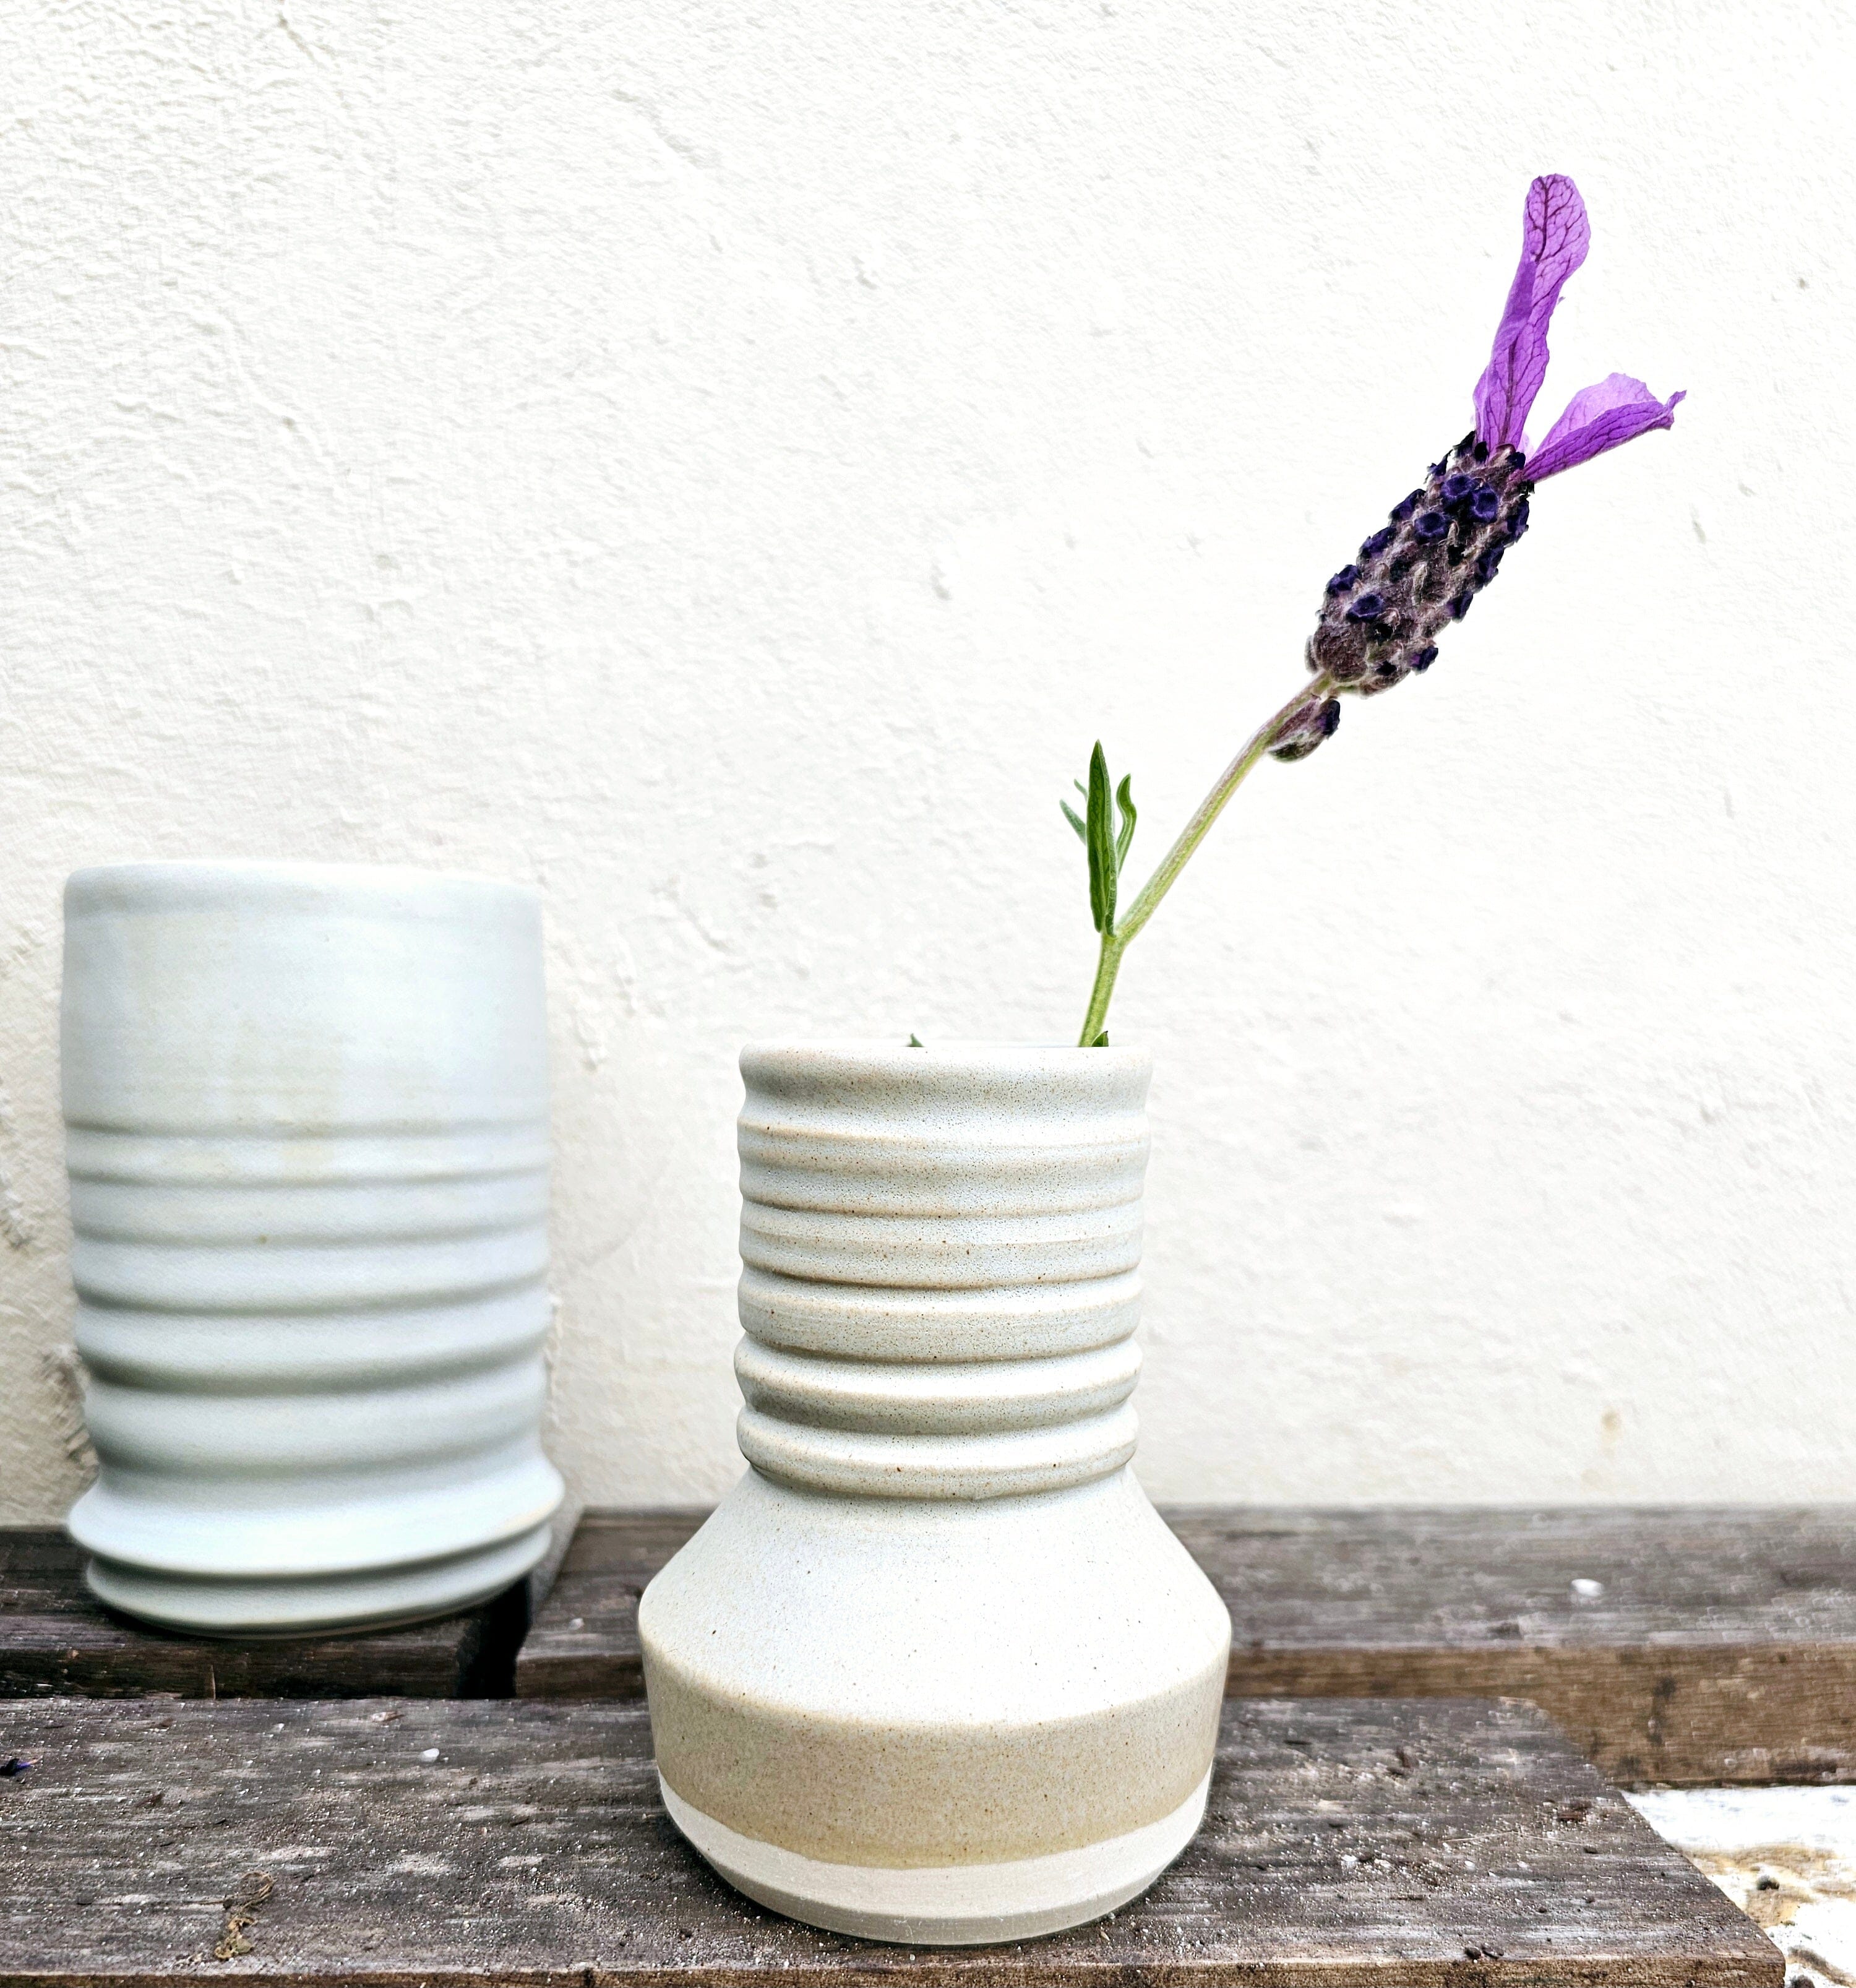 Handmade Ceramic Vases - The Little Mud Room Vase The Little Mud Room Med Duck Egg 110mm 